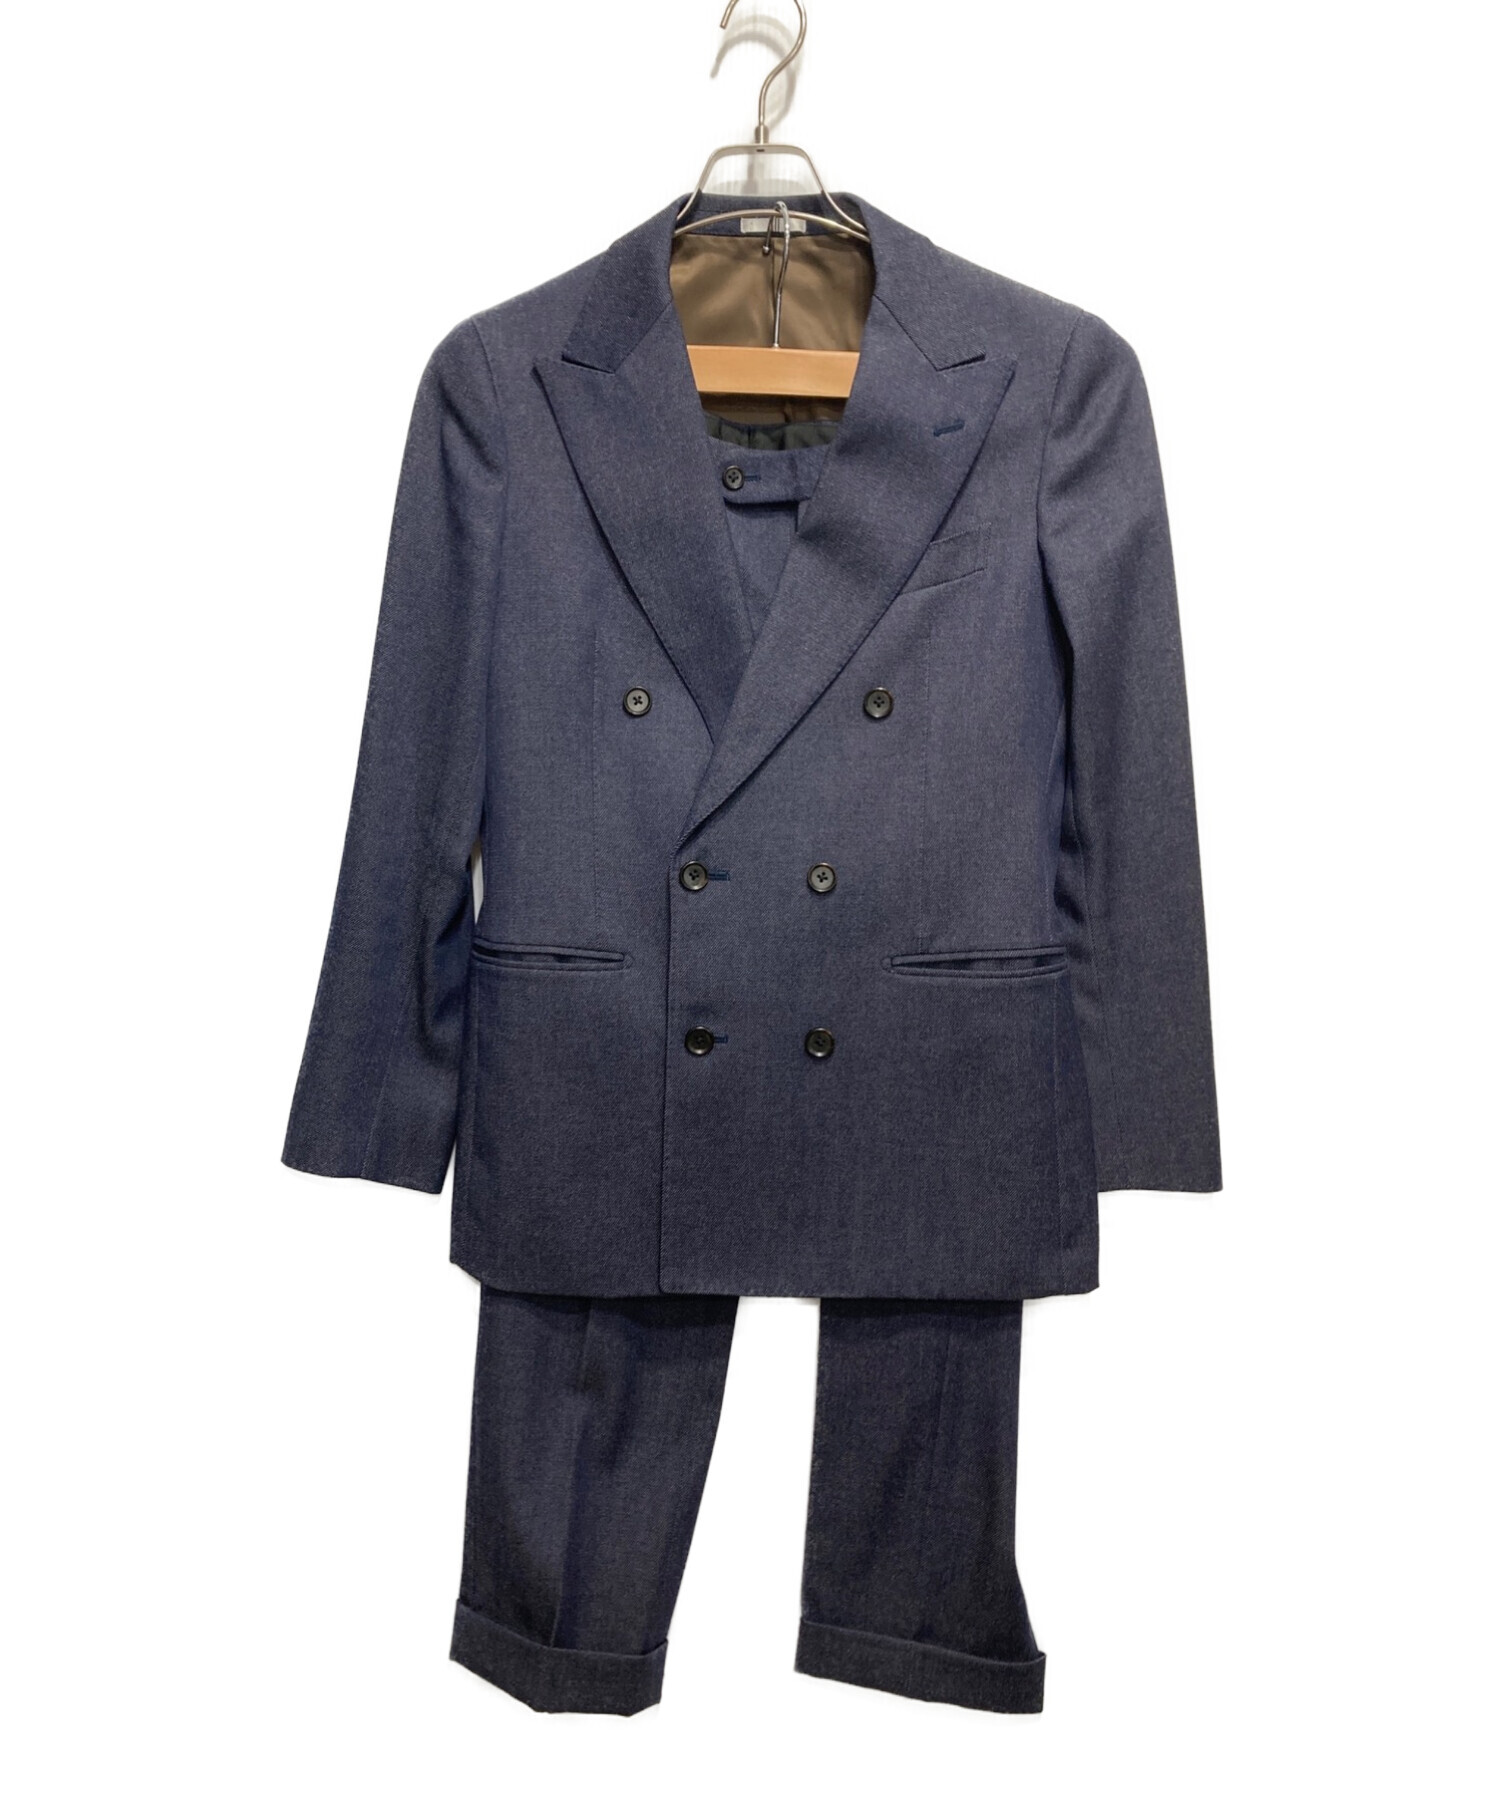 美品 スーツセレクト マルゾット生地 スーツセットアップ 青 A4 - スーツ